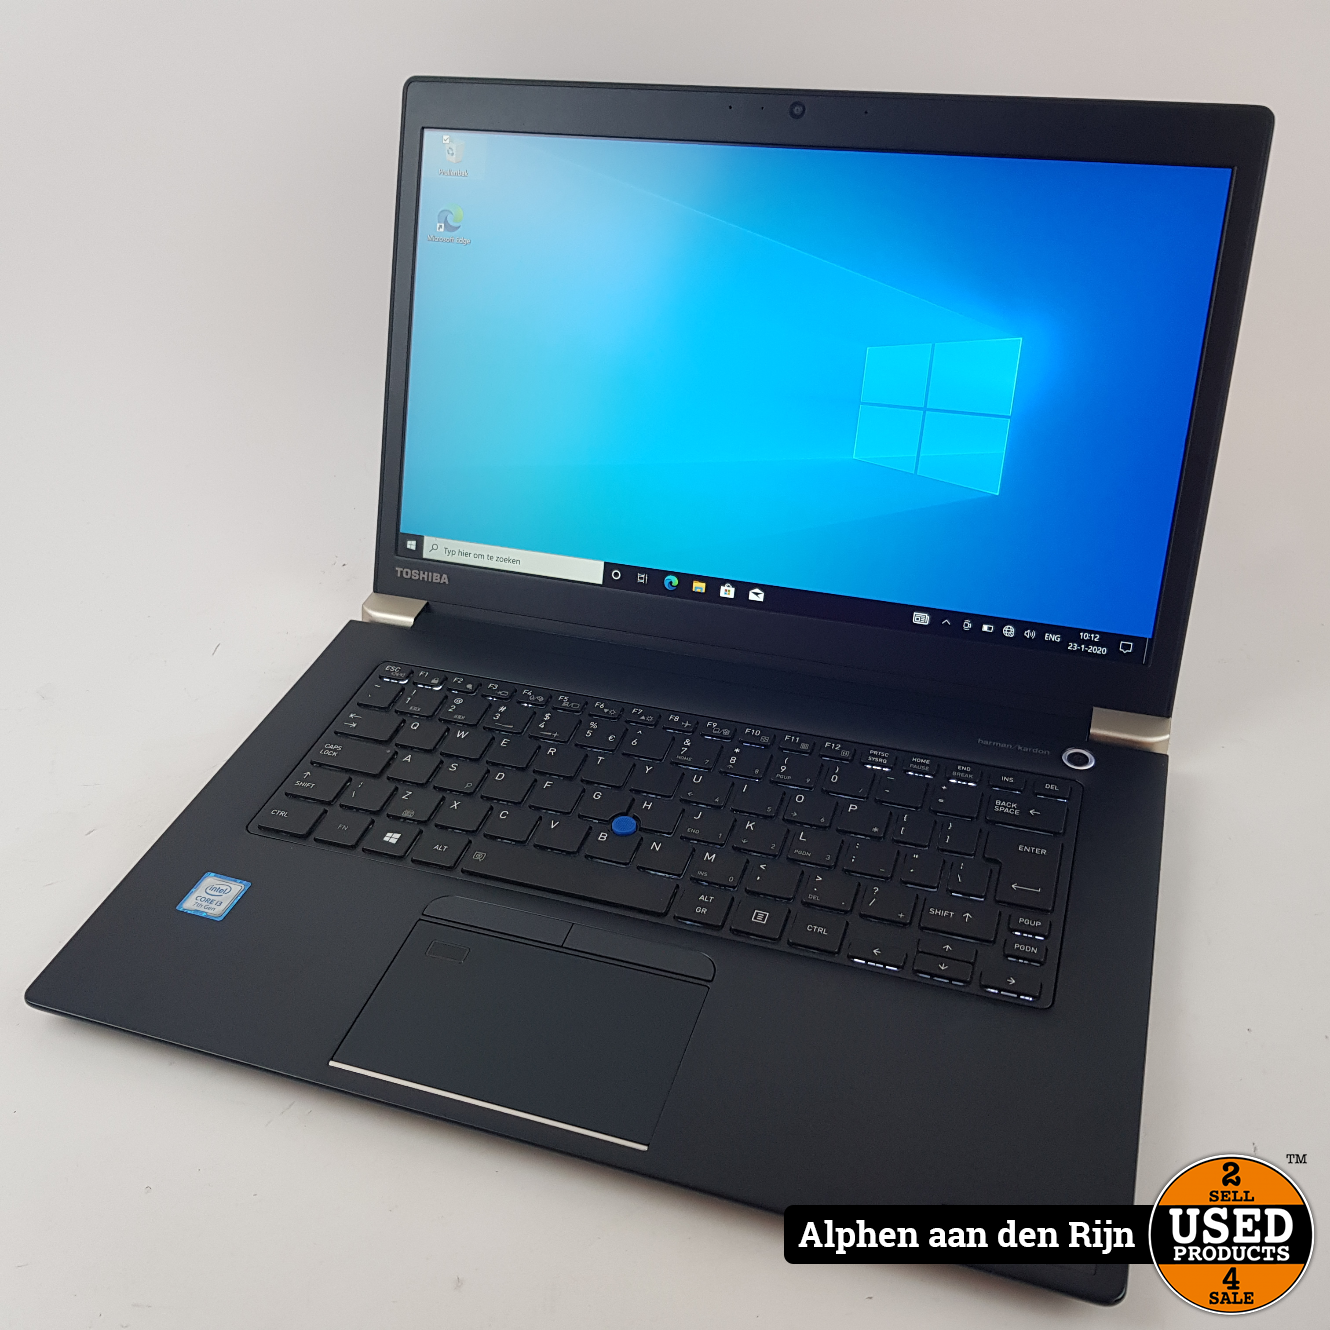 Verplaatsing Opera Ontoegankelijk Toshiba Tecra x40-d-15n Laptop + lader - Used Products Alphen aan den Rijn